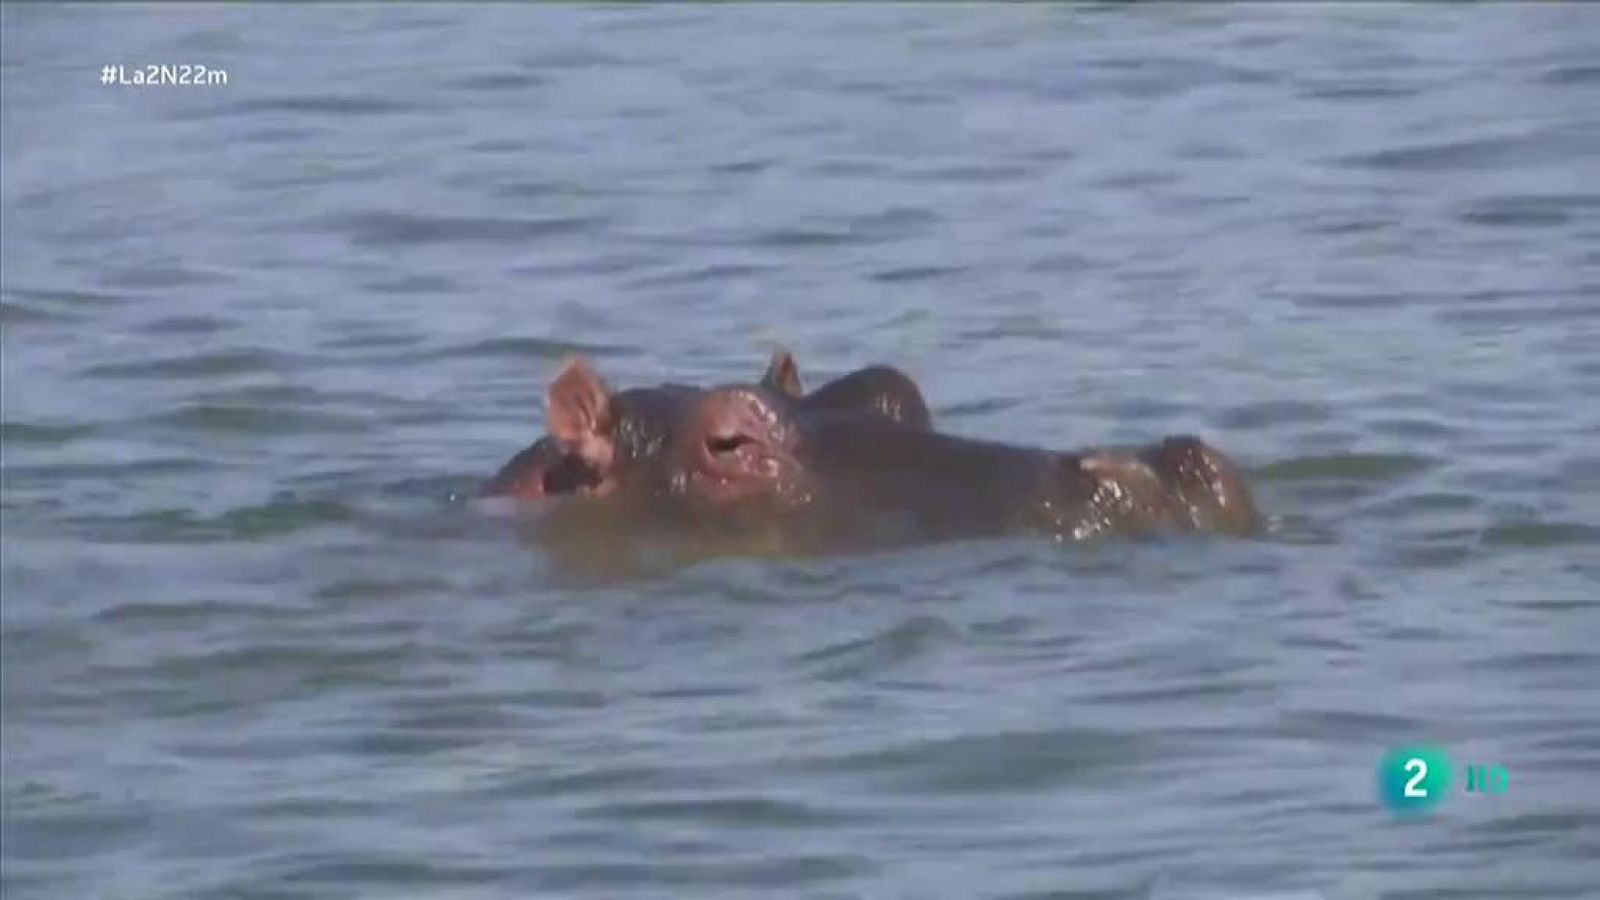 La desaparición de hipopótamos en África